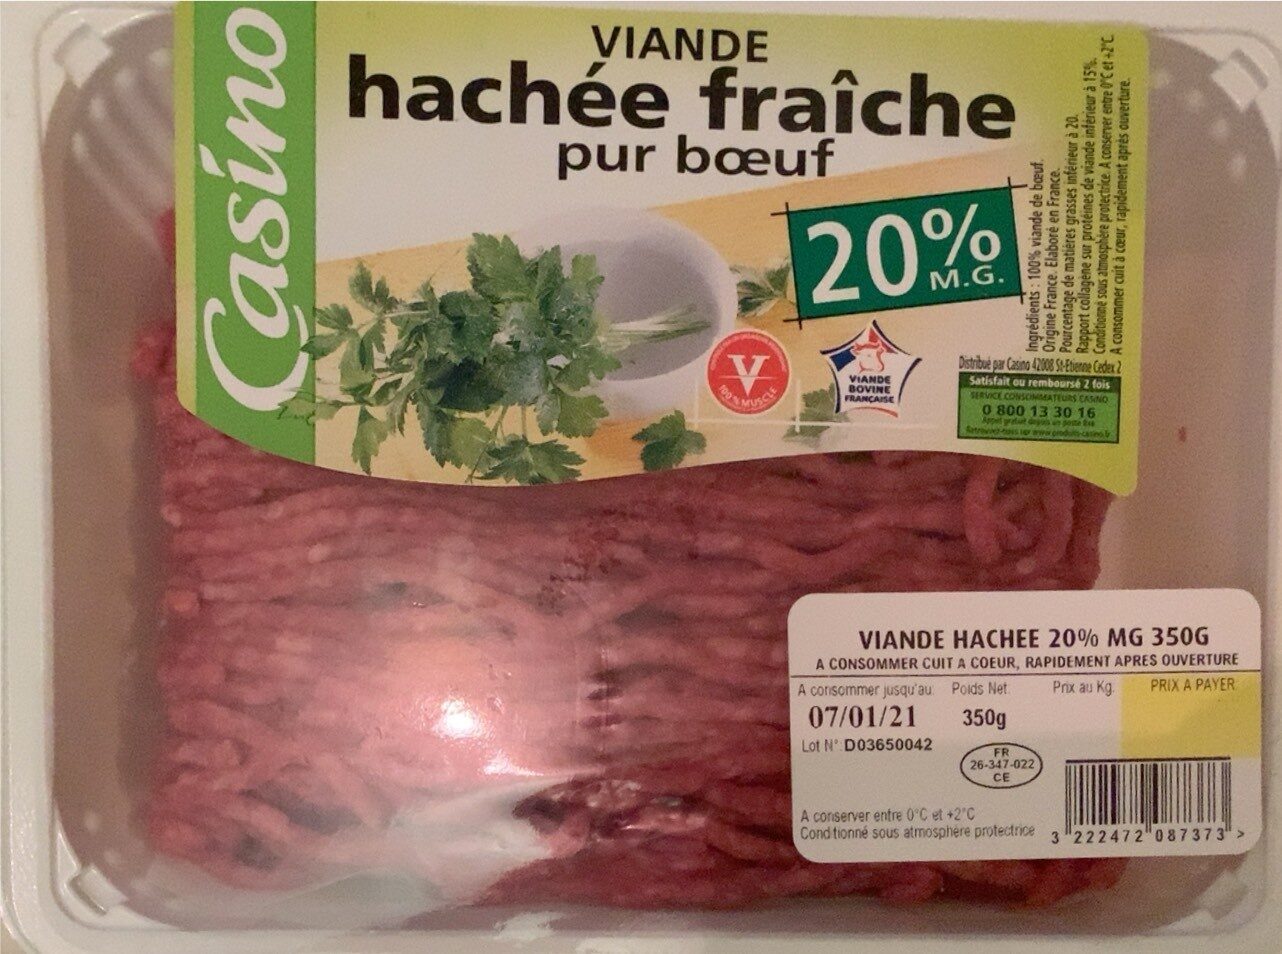 Viande hachée fraîche pur bœuf (20 % M.G.) - Product - fr